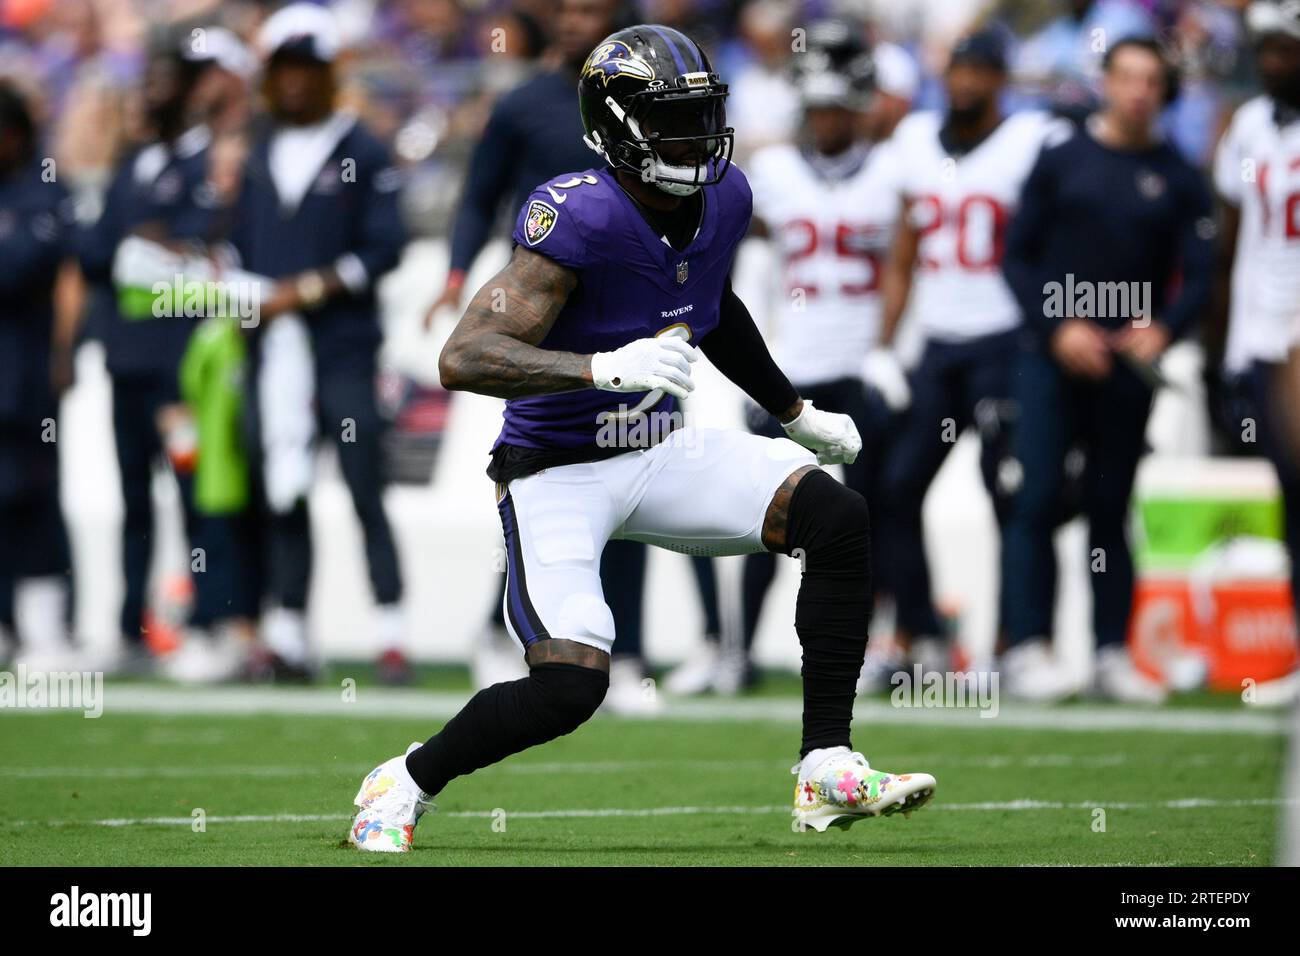 Baltimore Ravens wide receiver Odell Beckham Jr. (3) in action